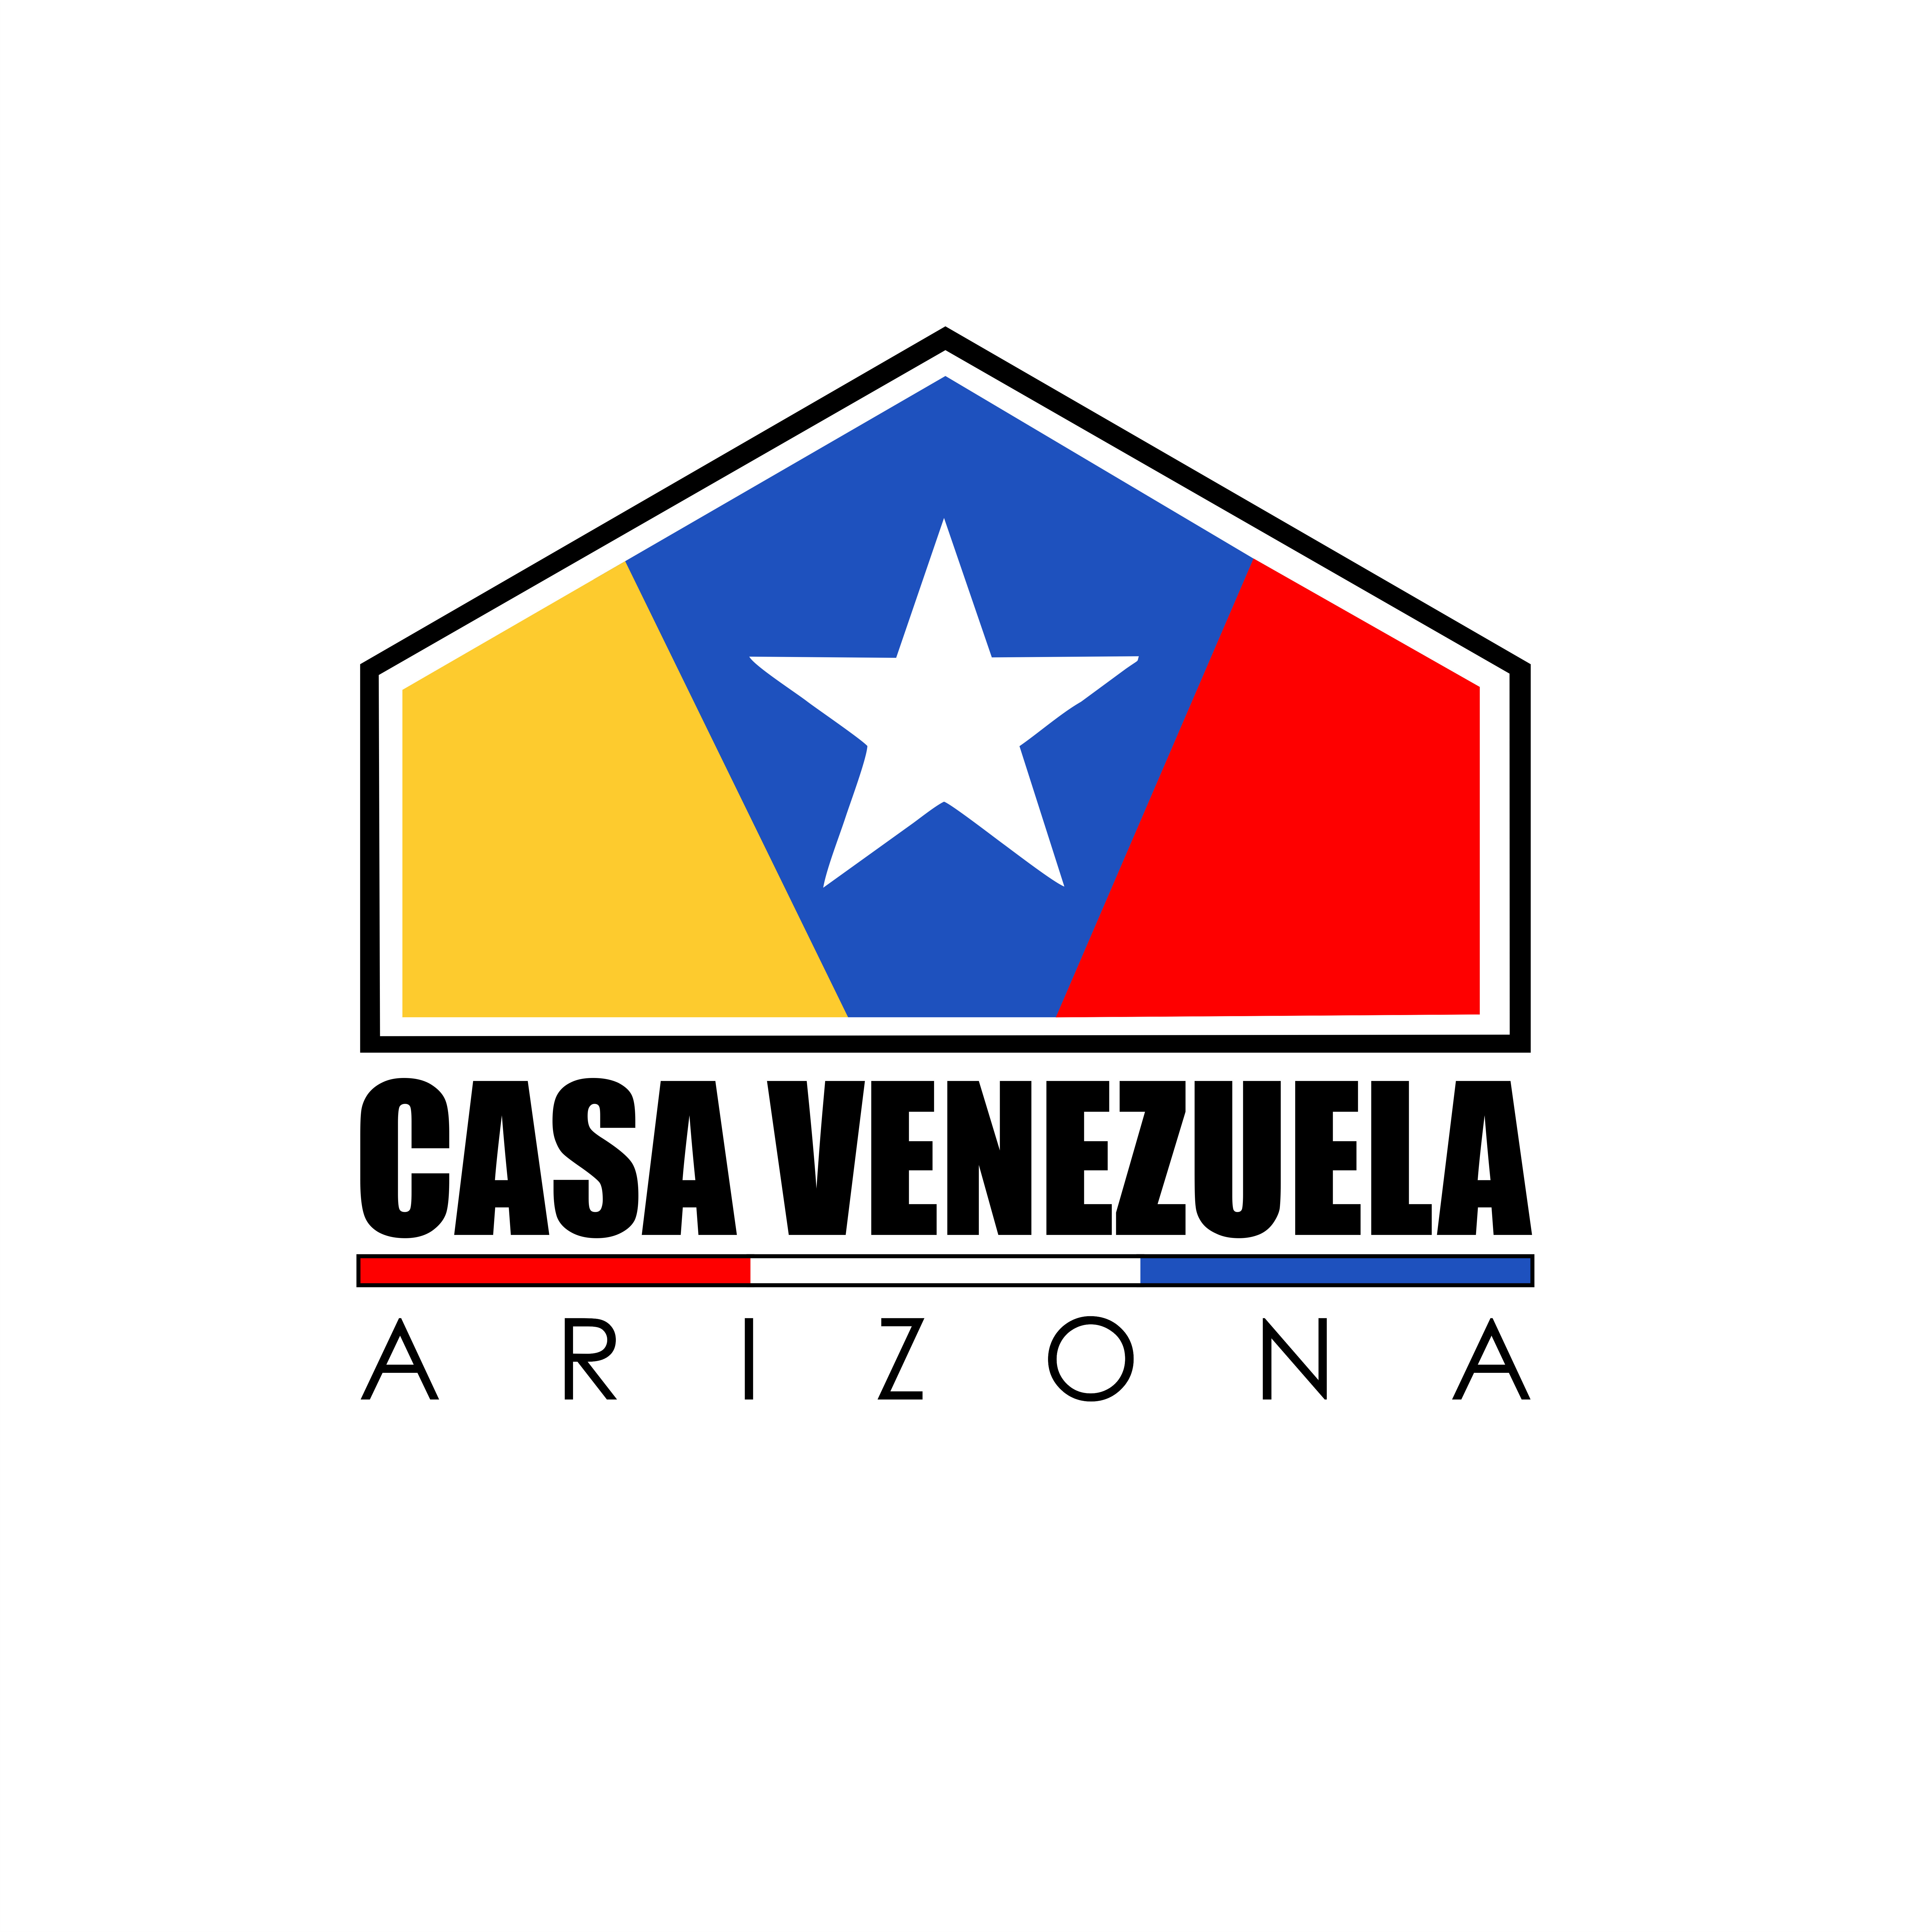 Casa Venezuela Arizona logo